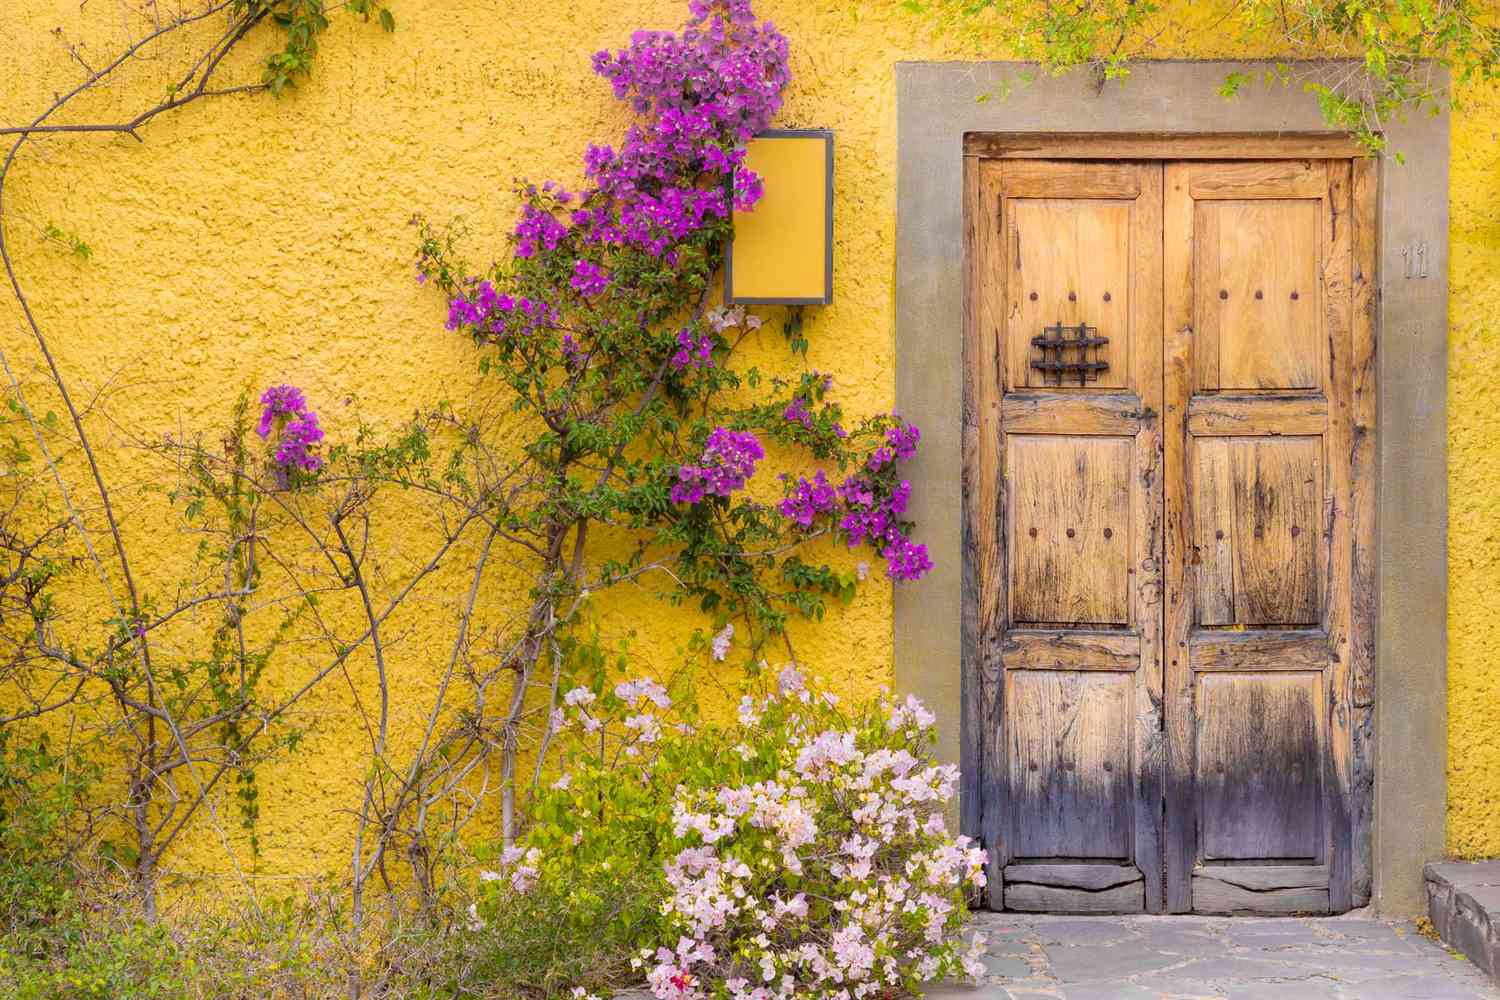 Porte en bois traditionnelle située dans un mur jaune à San Miguel de Allende, Mexique